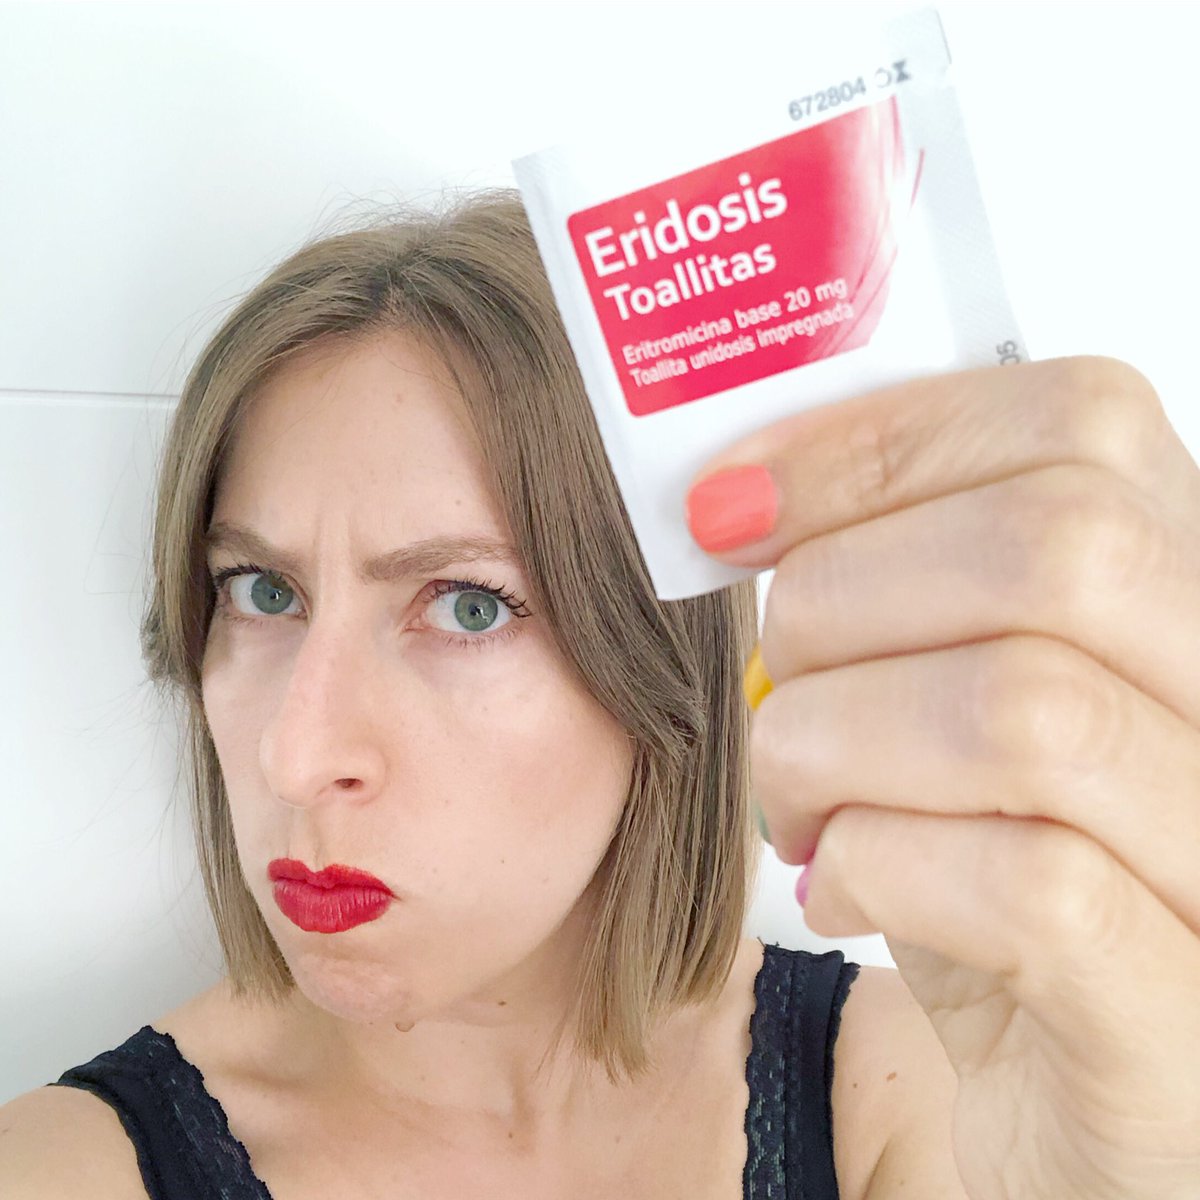 Deborah García "¡Las toallitas Eridosis para el acné son un medicamento, un cosmético! 🧶Hilo... https://t.co/9NxbhnXrsj" / Twitter